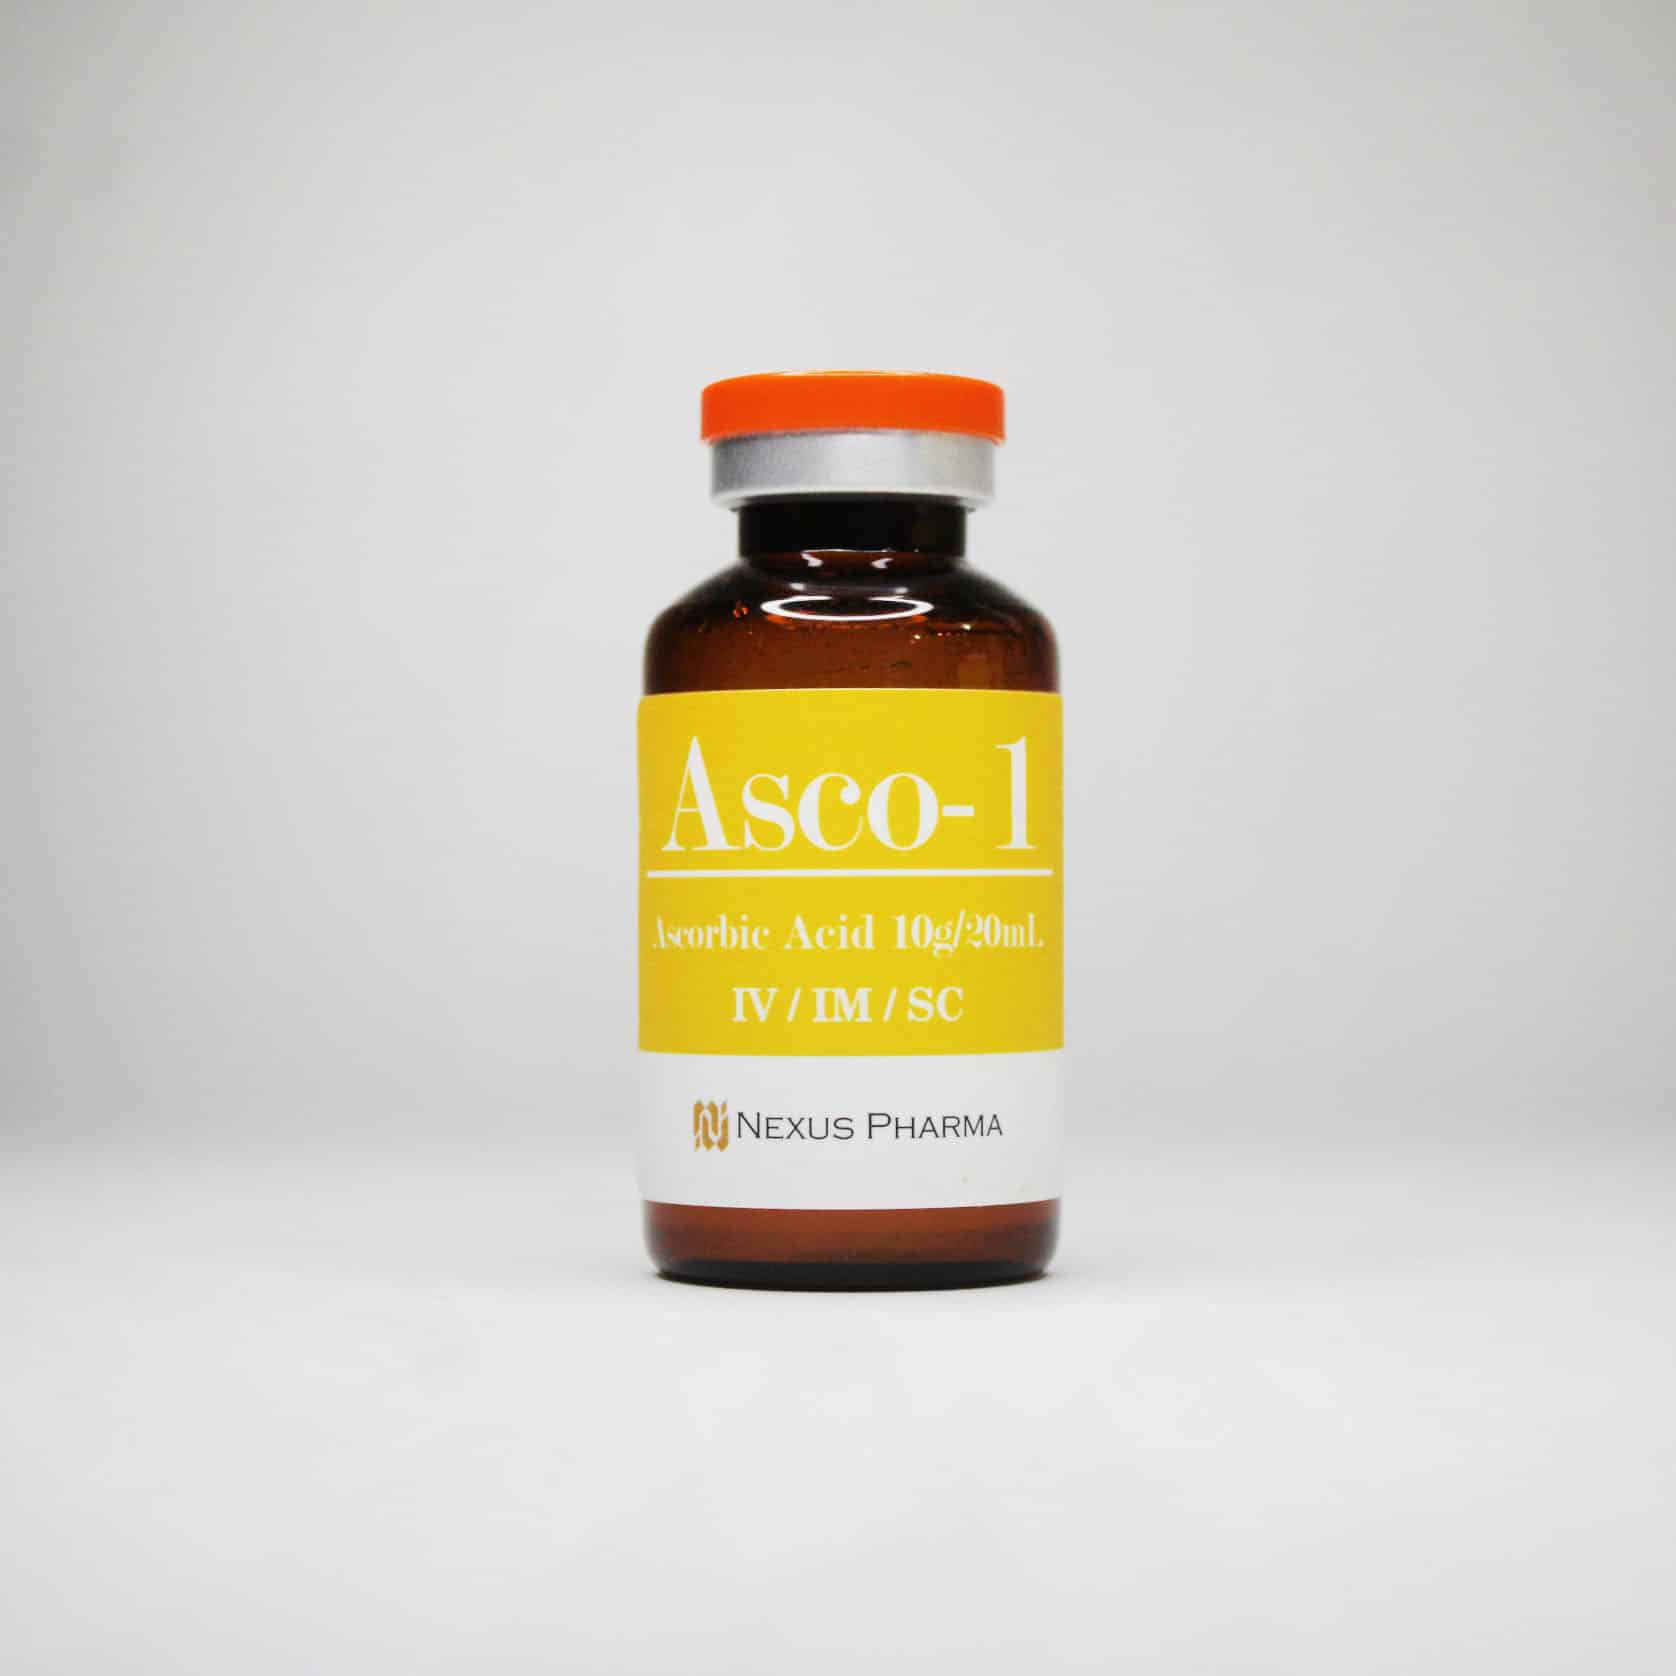 asco-1 form Nexus Pharma Philippines